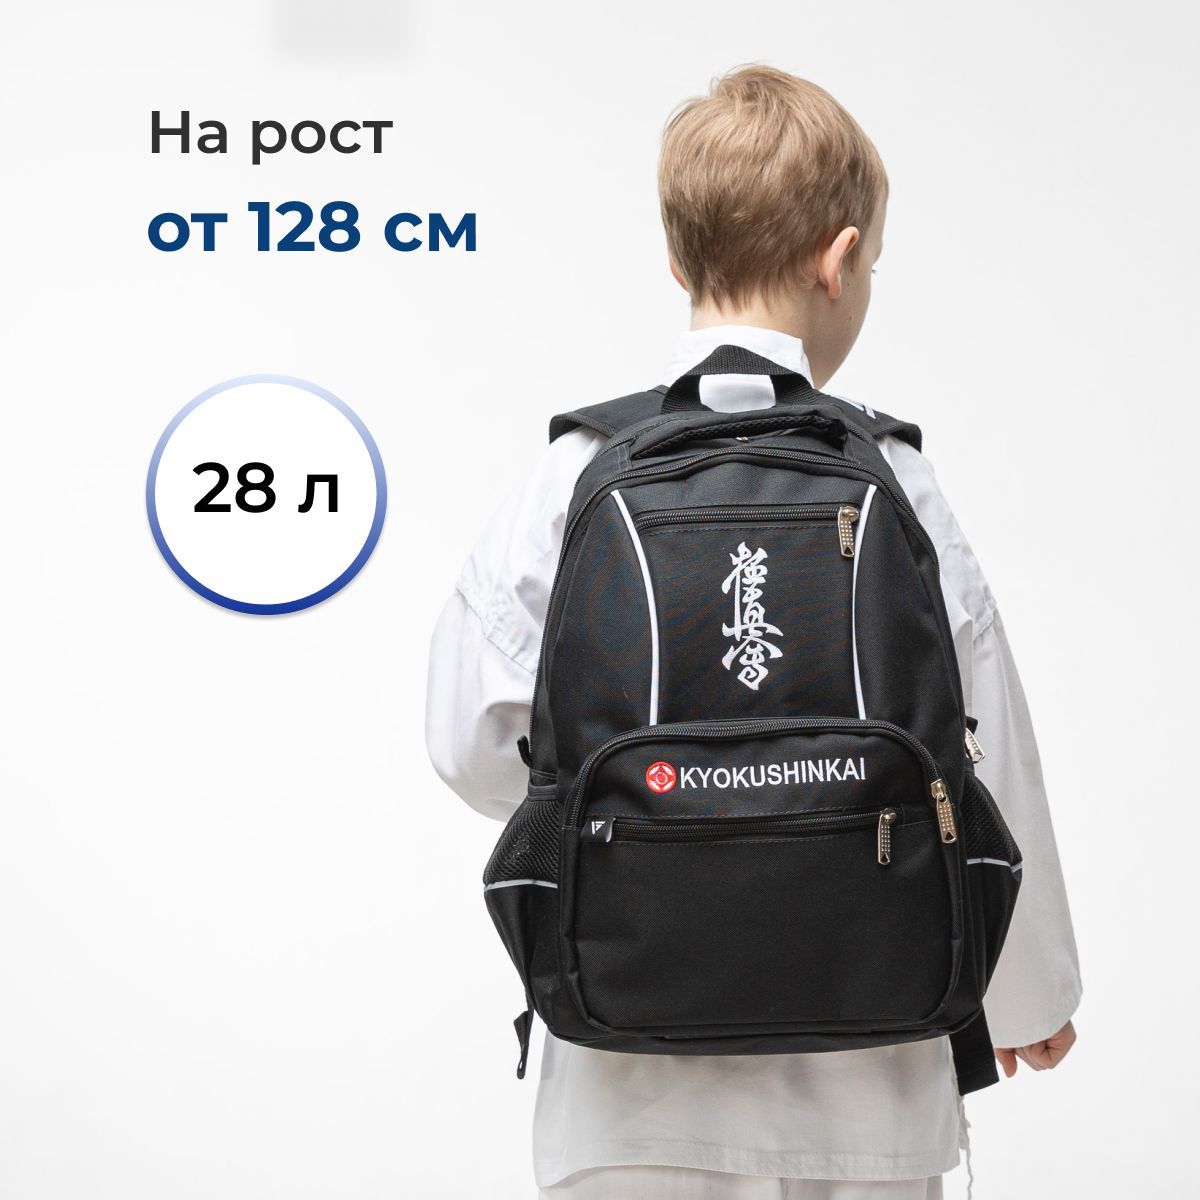 Спортивный рюкзак сумка для каратэ киокушинкай VincoBag с вышивкой на тренировку 28л